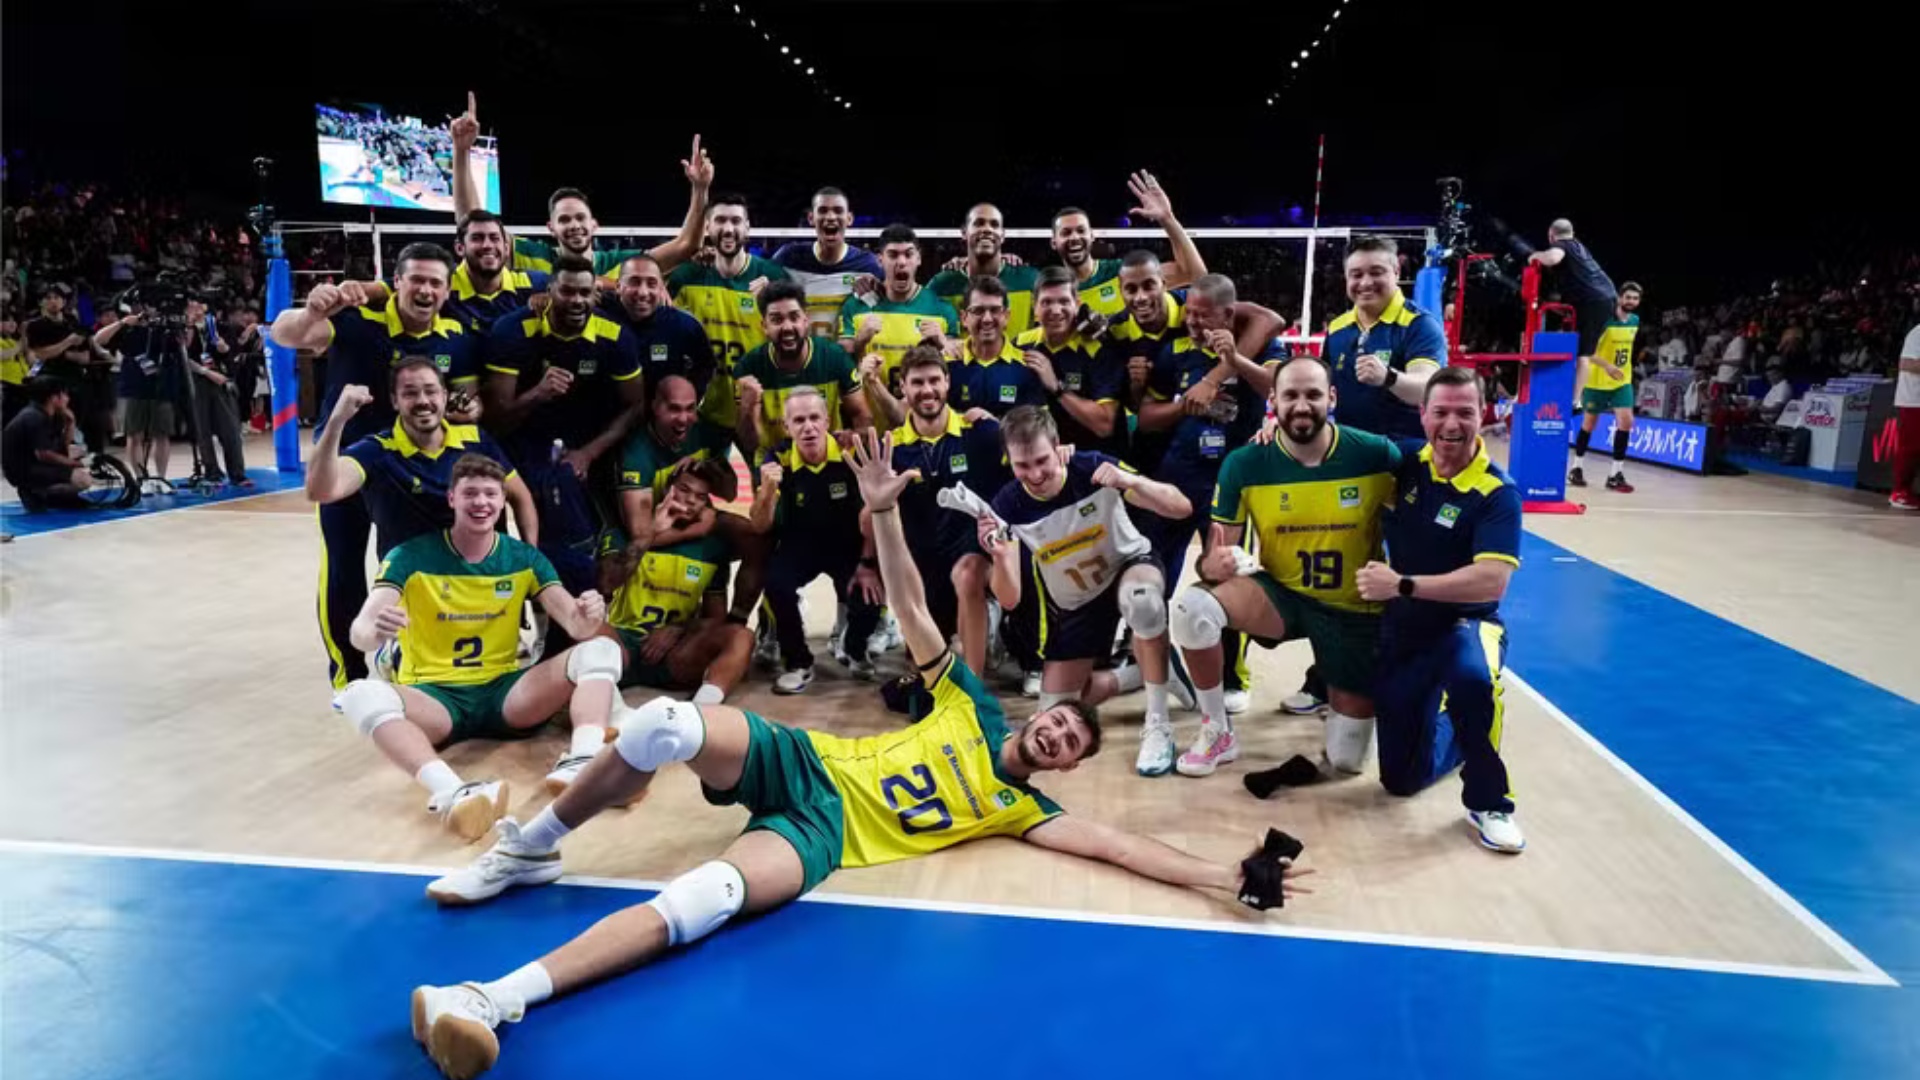 Vôlei masculino: Brasil enfrentará Polônia, Egito e Itália nas Olimpíadas